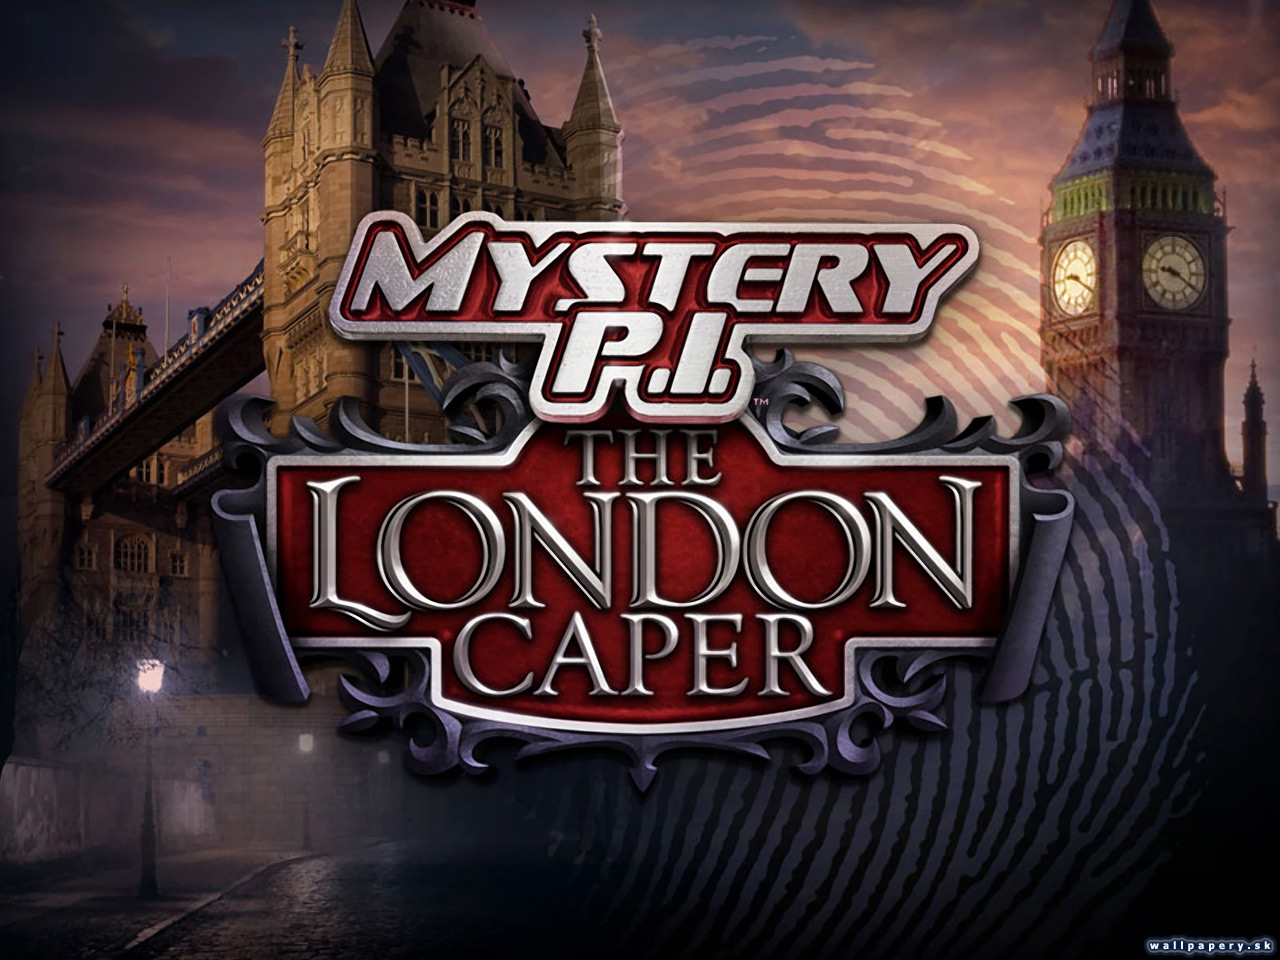 Mystery P.I. - The London Caper - wallpaper 1